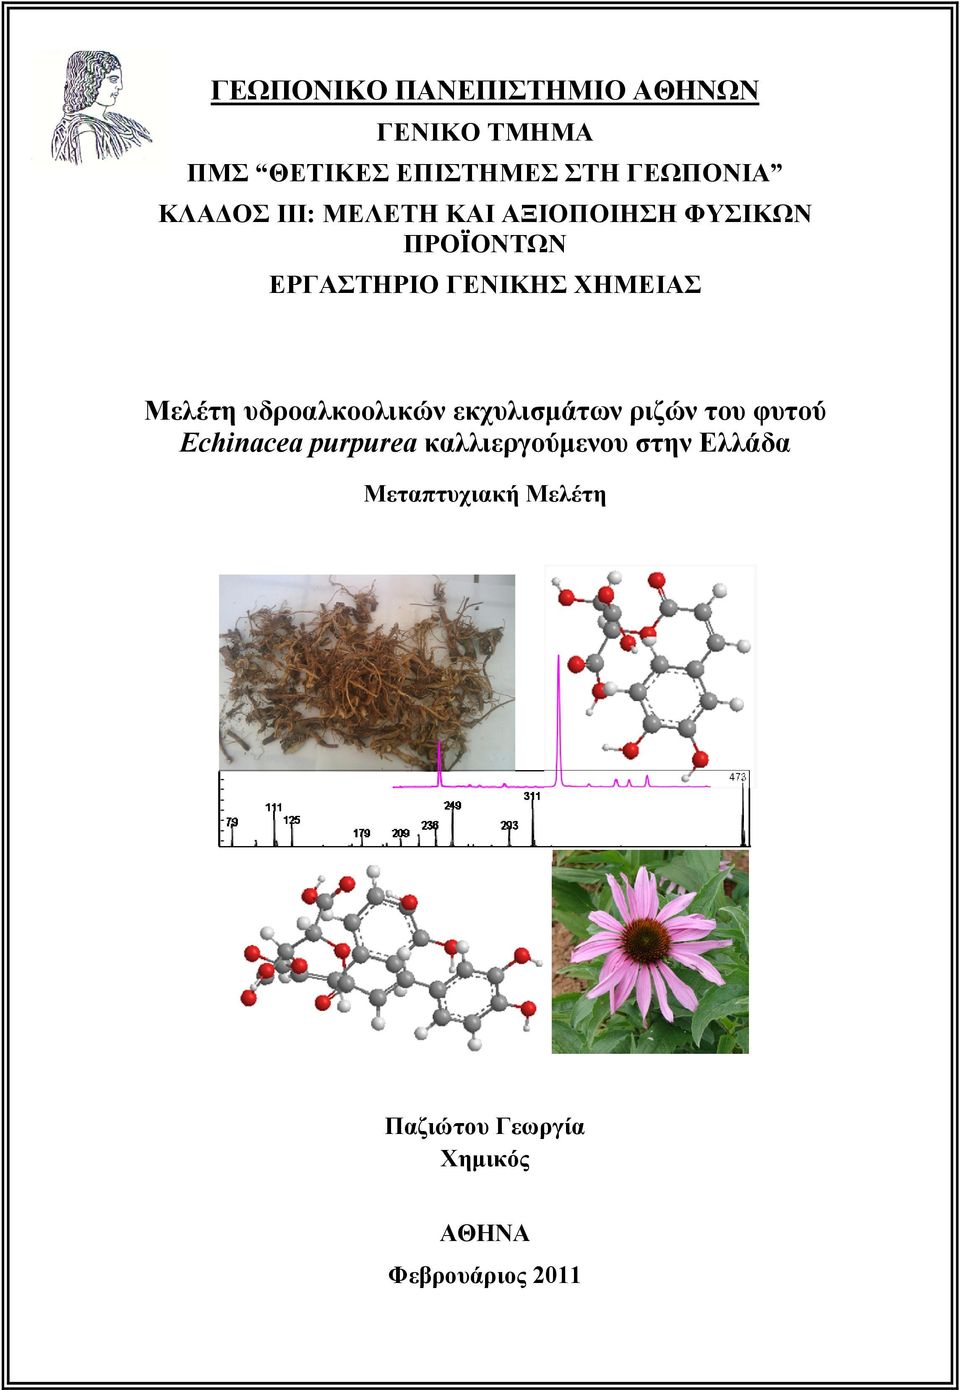 Μελέτη υδροαλκοολικών εκχυλισμάτων ριζών του φυτού Εchinacea purpurea